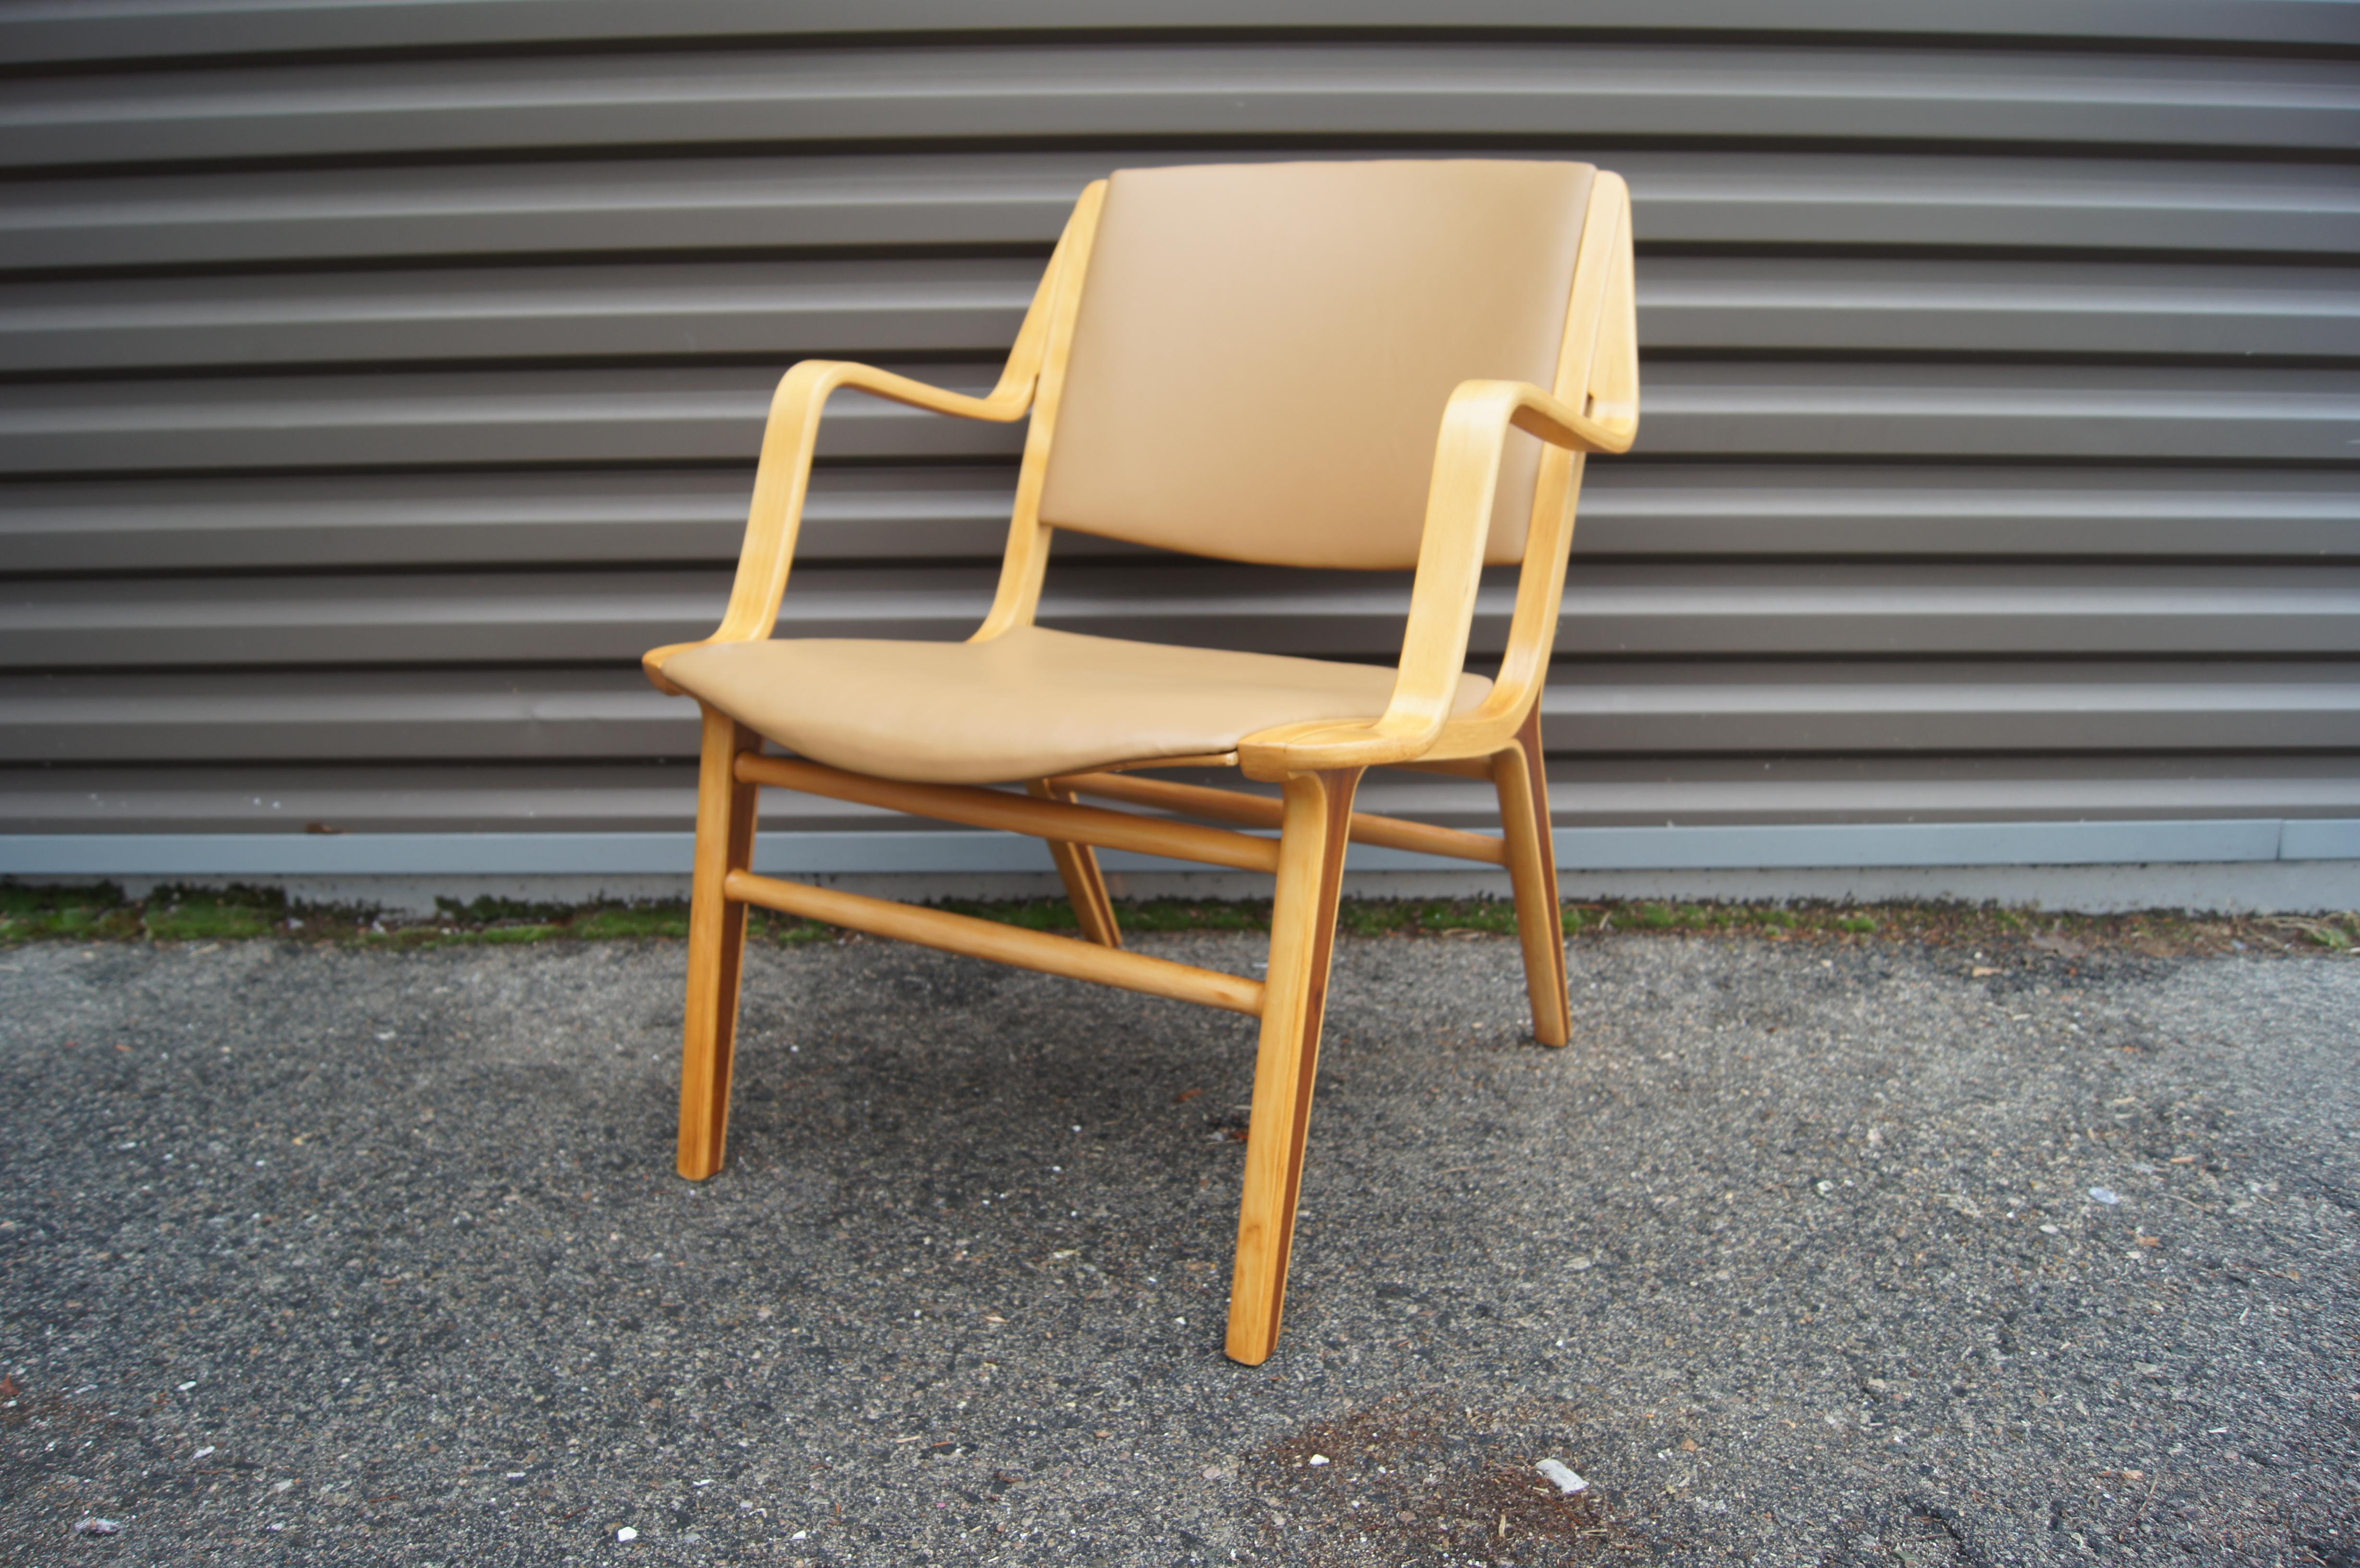 Conçue par Peter Hvidt et Orla Mølgaard Nielsen pour Fritz Hansen en 1947, la chaise Ax a un cadre en hêtre courbé avec des accoudoirs qui offre une assise extrêmement confortable. De profil, les pieds inclinés présentent un cœur en teck contrasté.